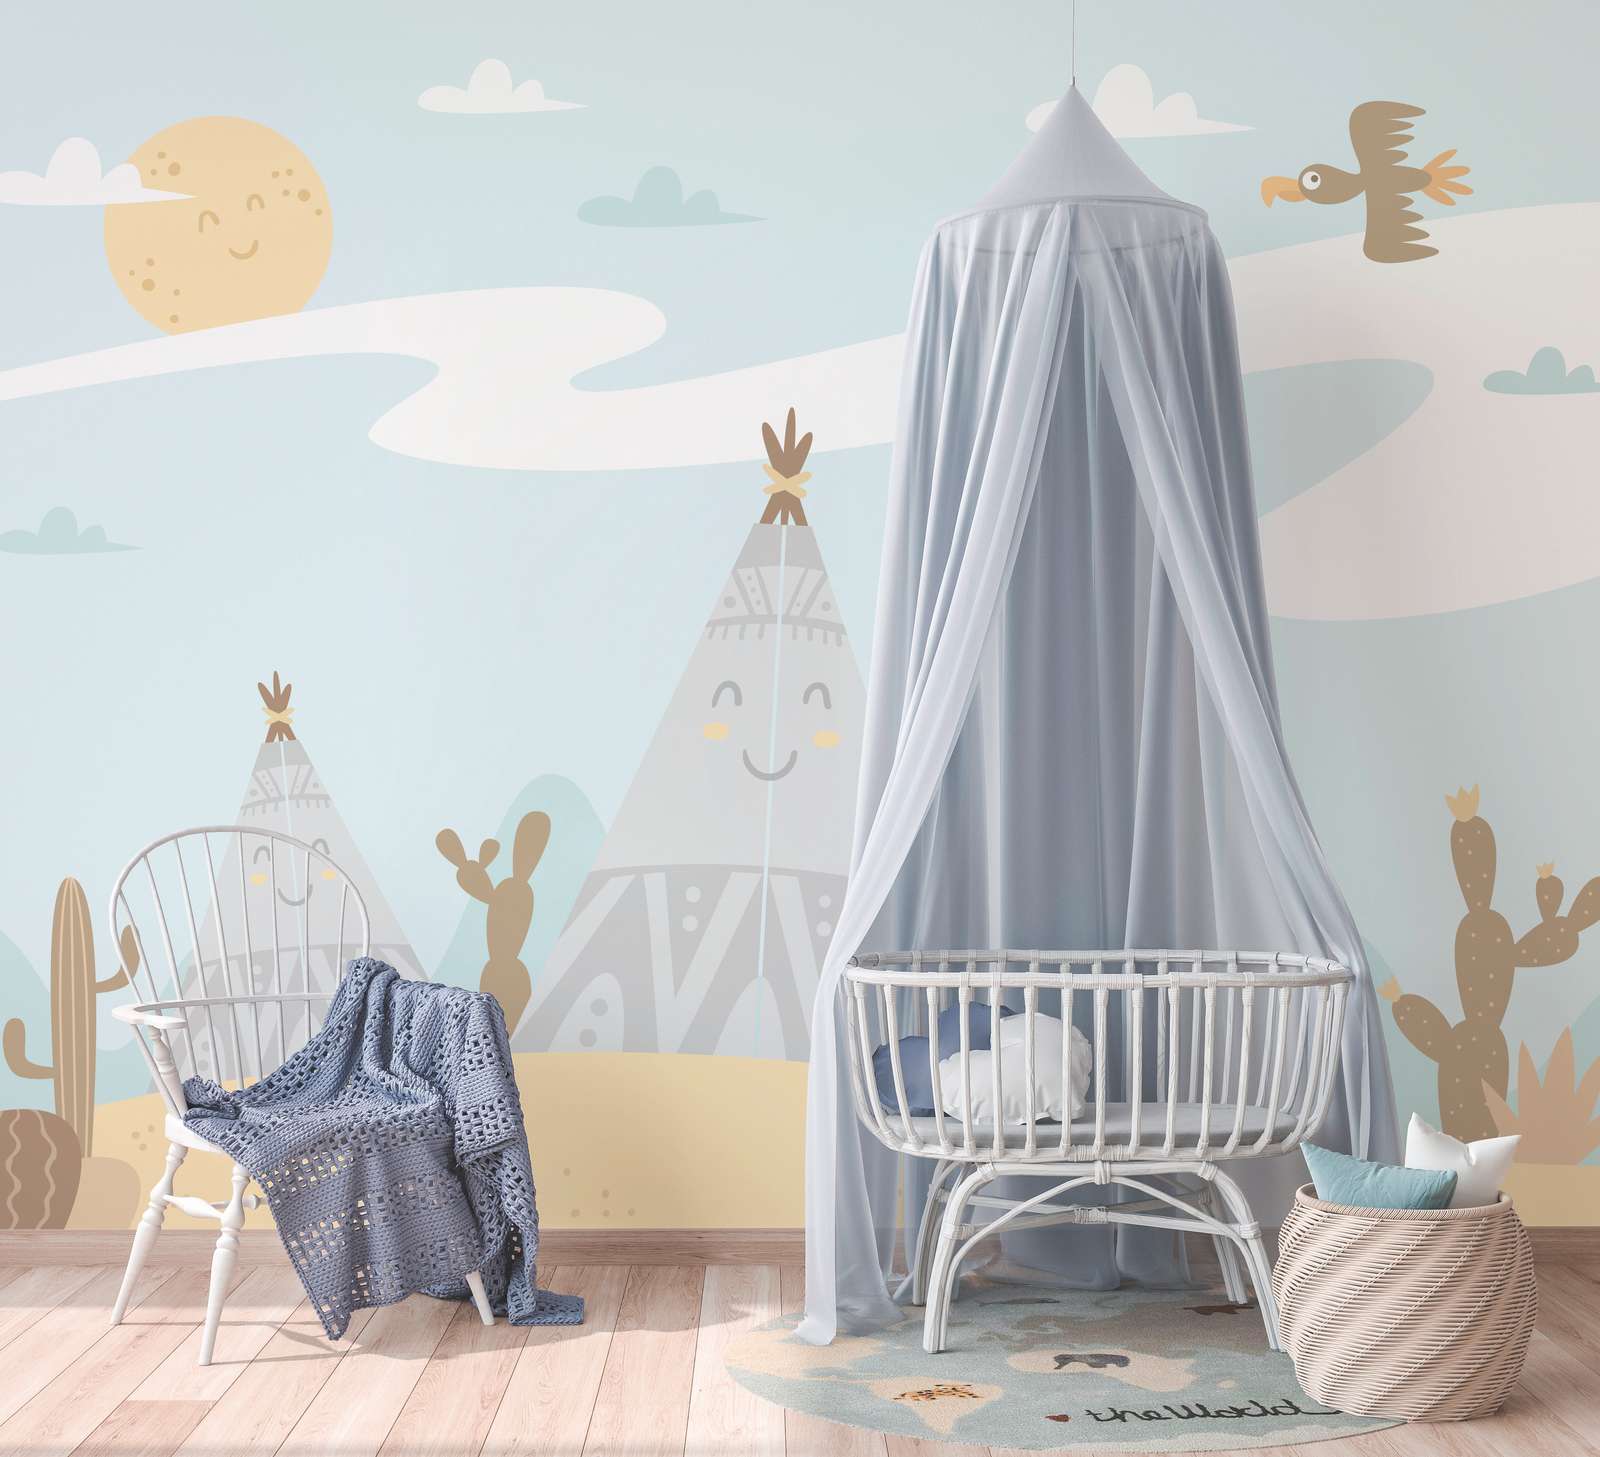             Papel pintado de habitación infantil Desierto con Tippies y Cactus - Azul, Amarillo, Marrón
        